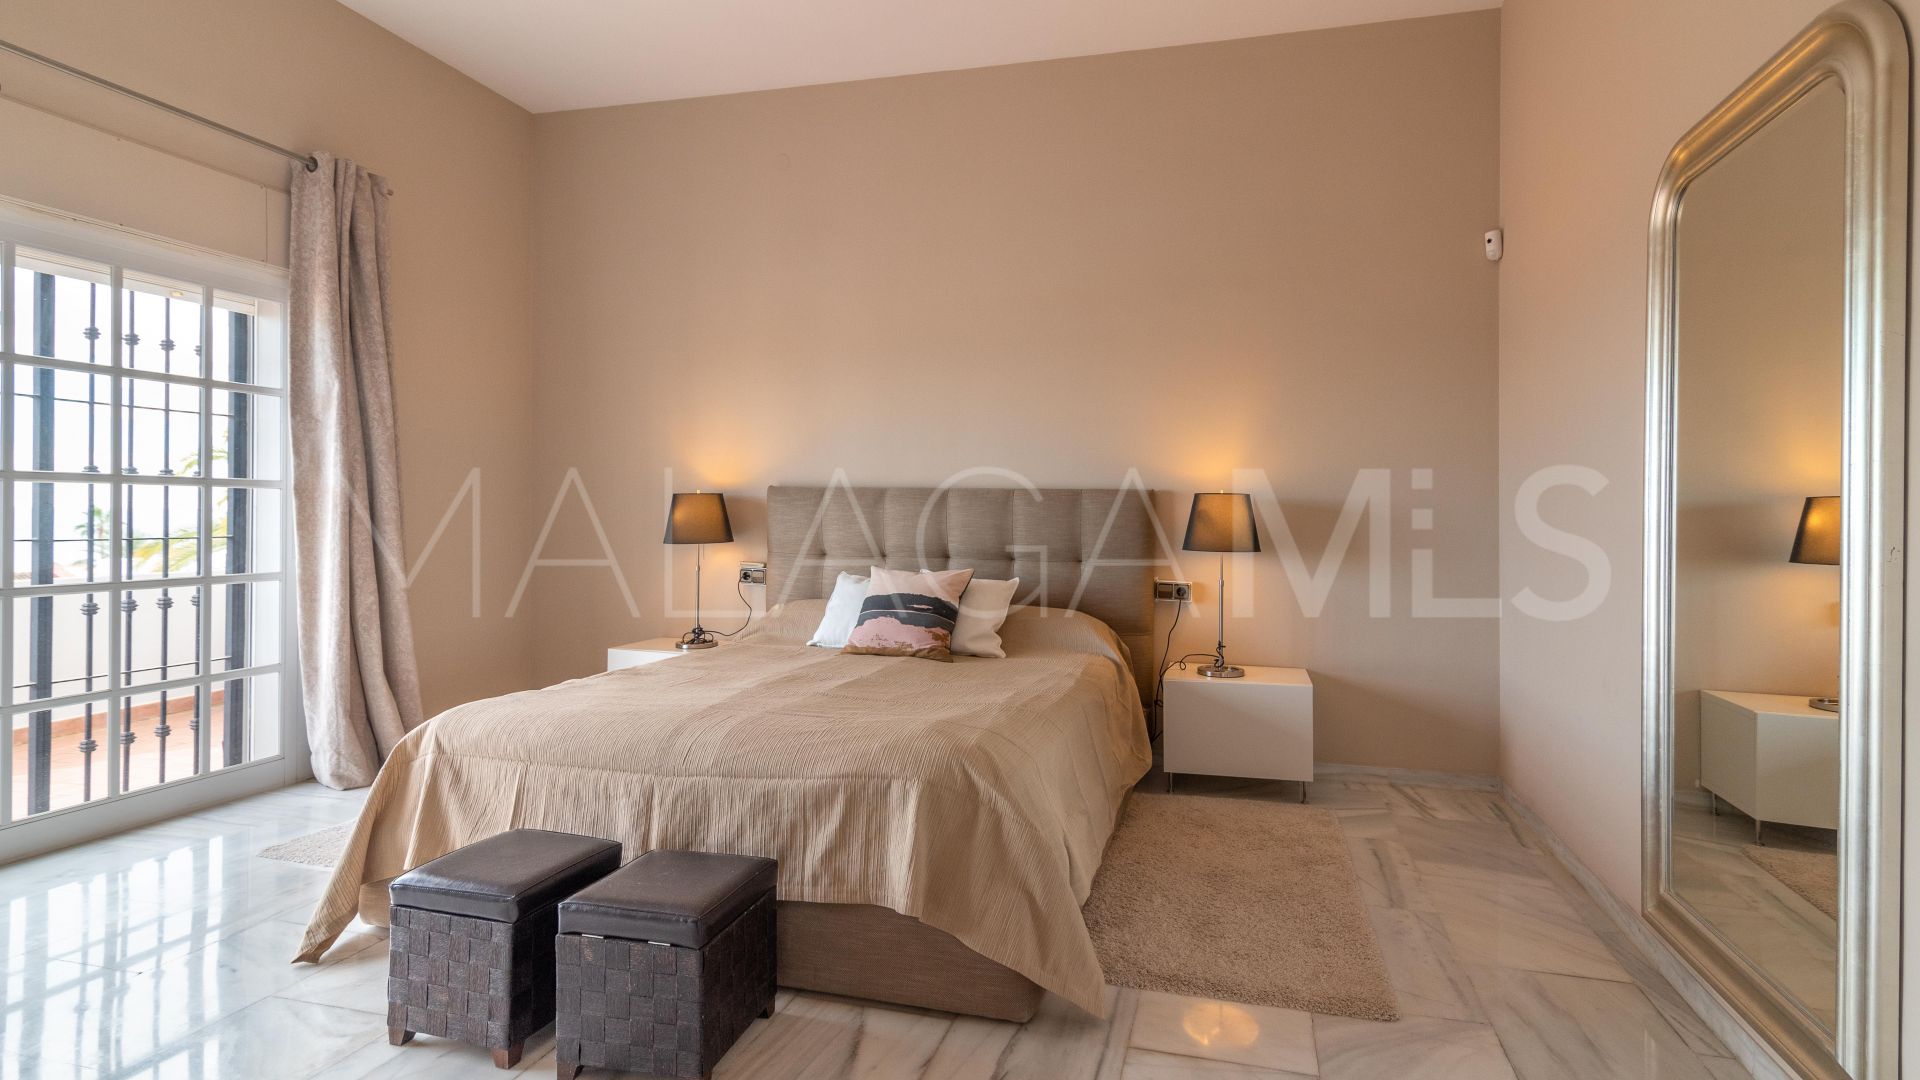 Casa with 3 bedrooms for sale in Cala de Mijas